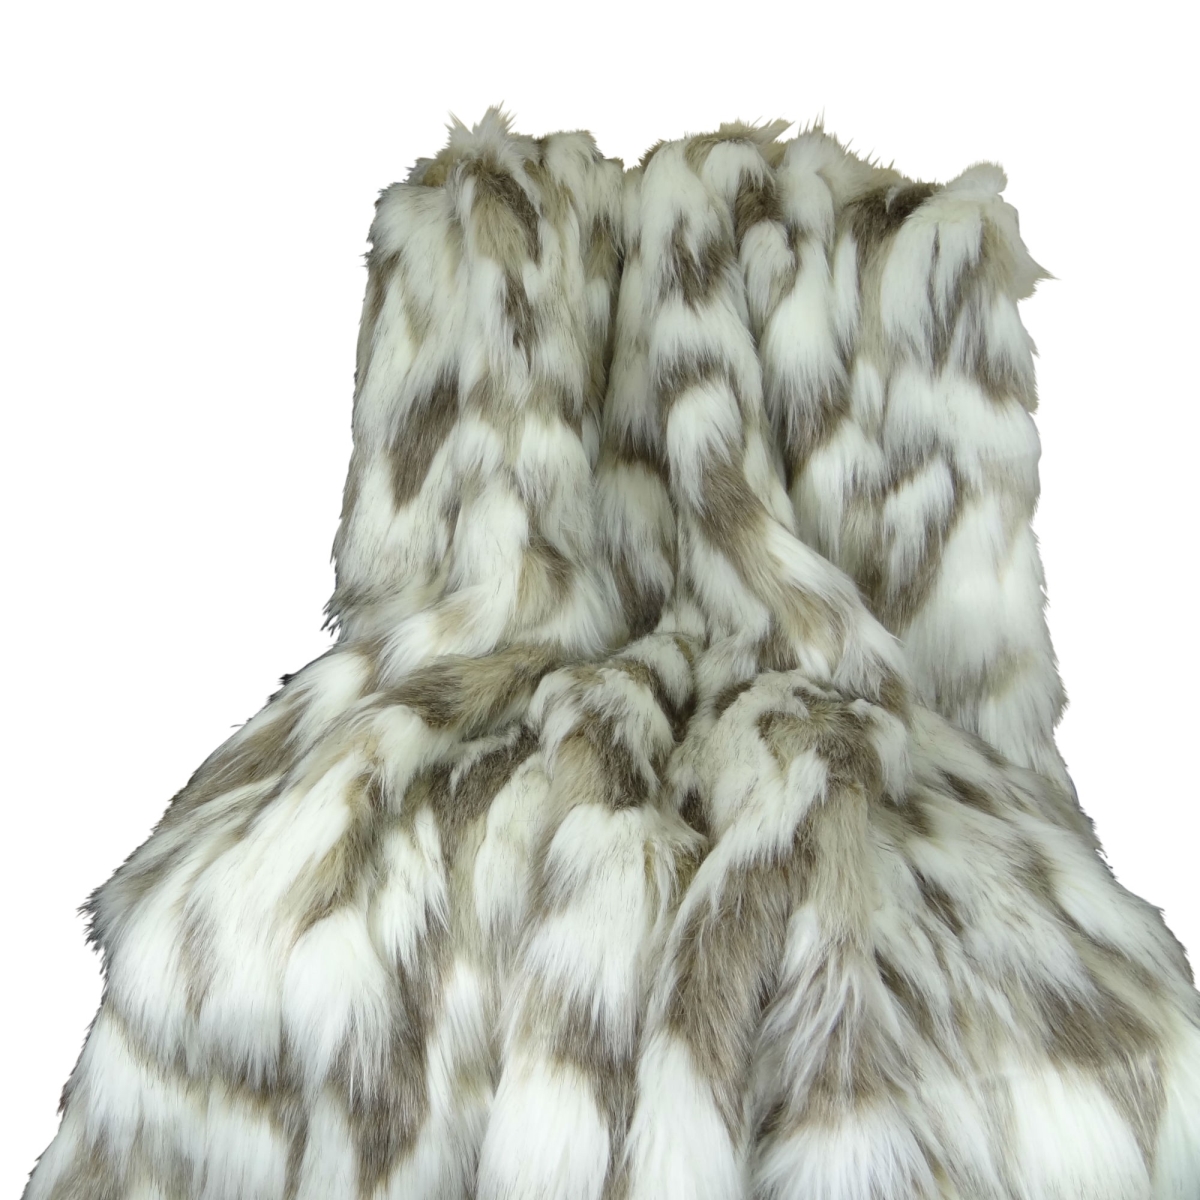 Pb16405-108x90t Tibet Faux Fur Blanket, Ivory & Gray - 108 X 90 In.